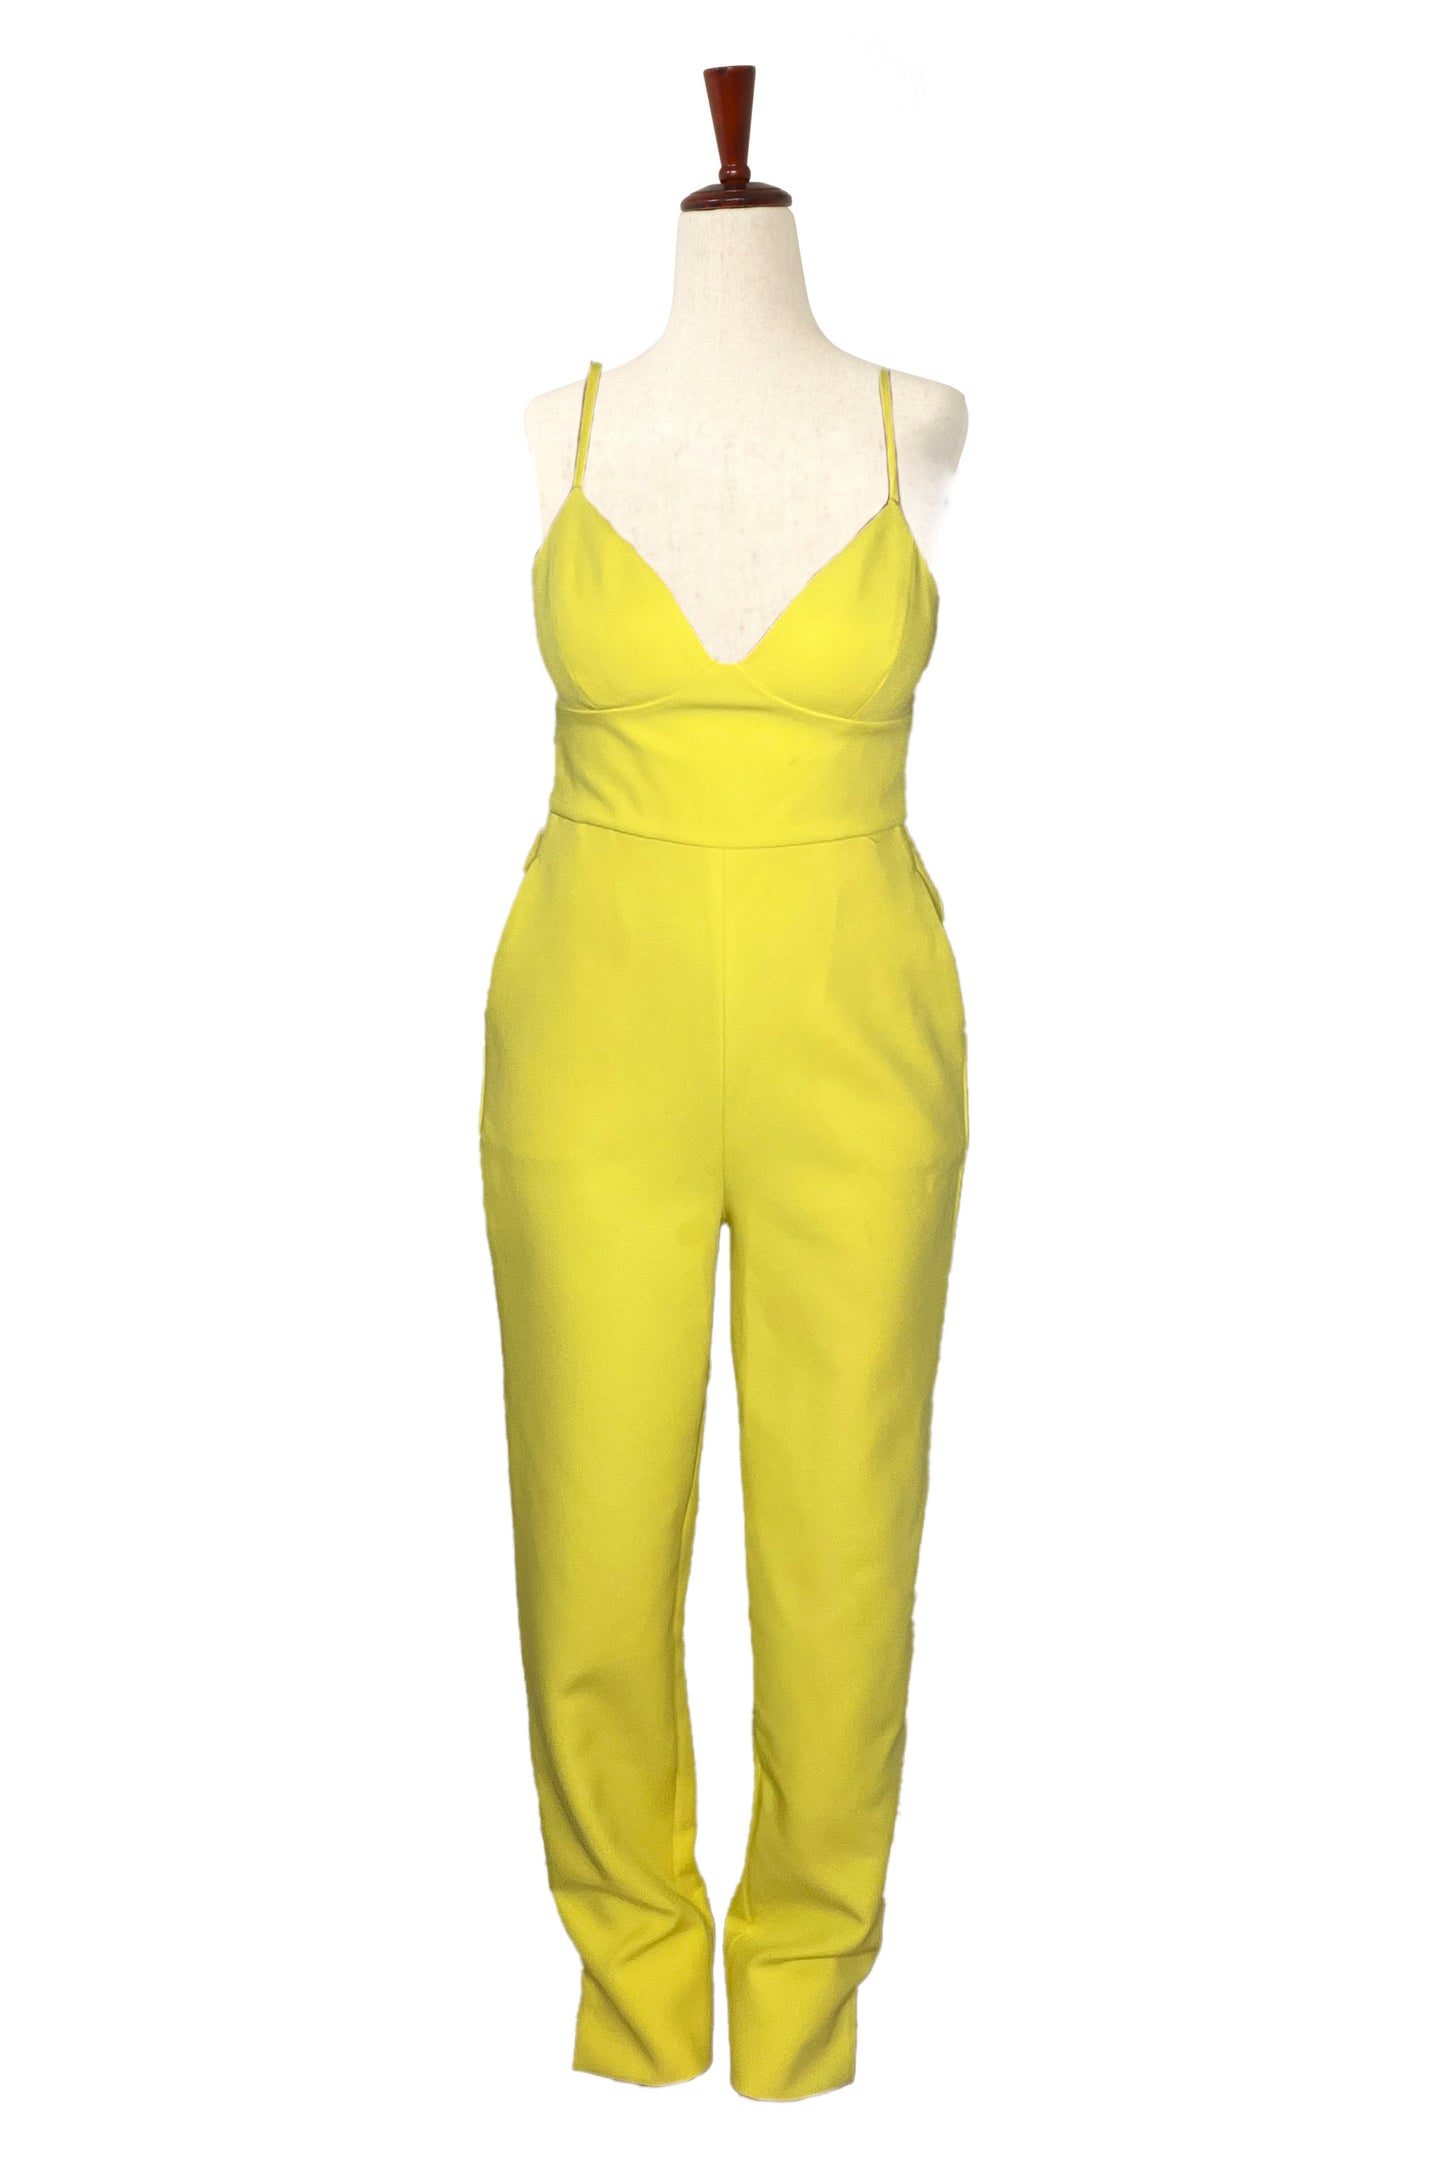 BCBG MAXAZRIA - Yellow Jumpsuit W/ Pockets - Size S